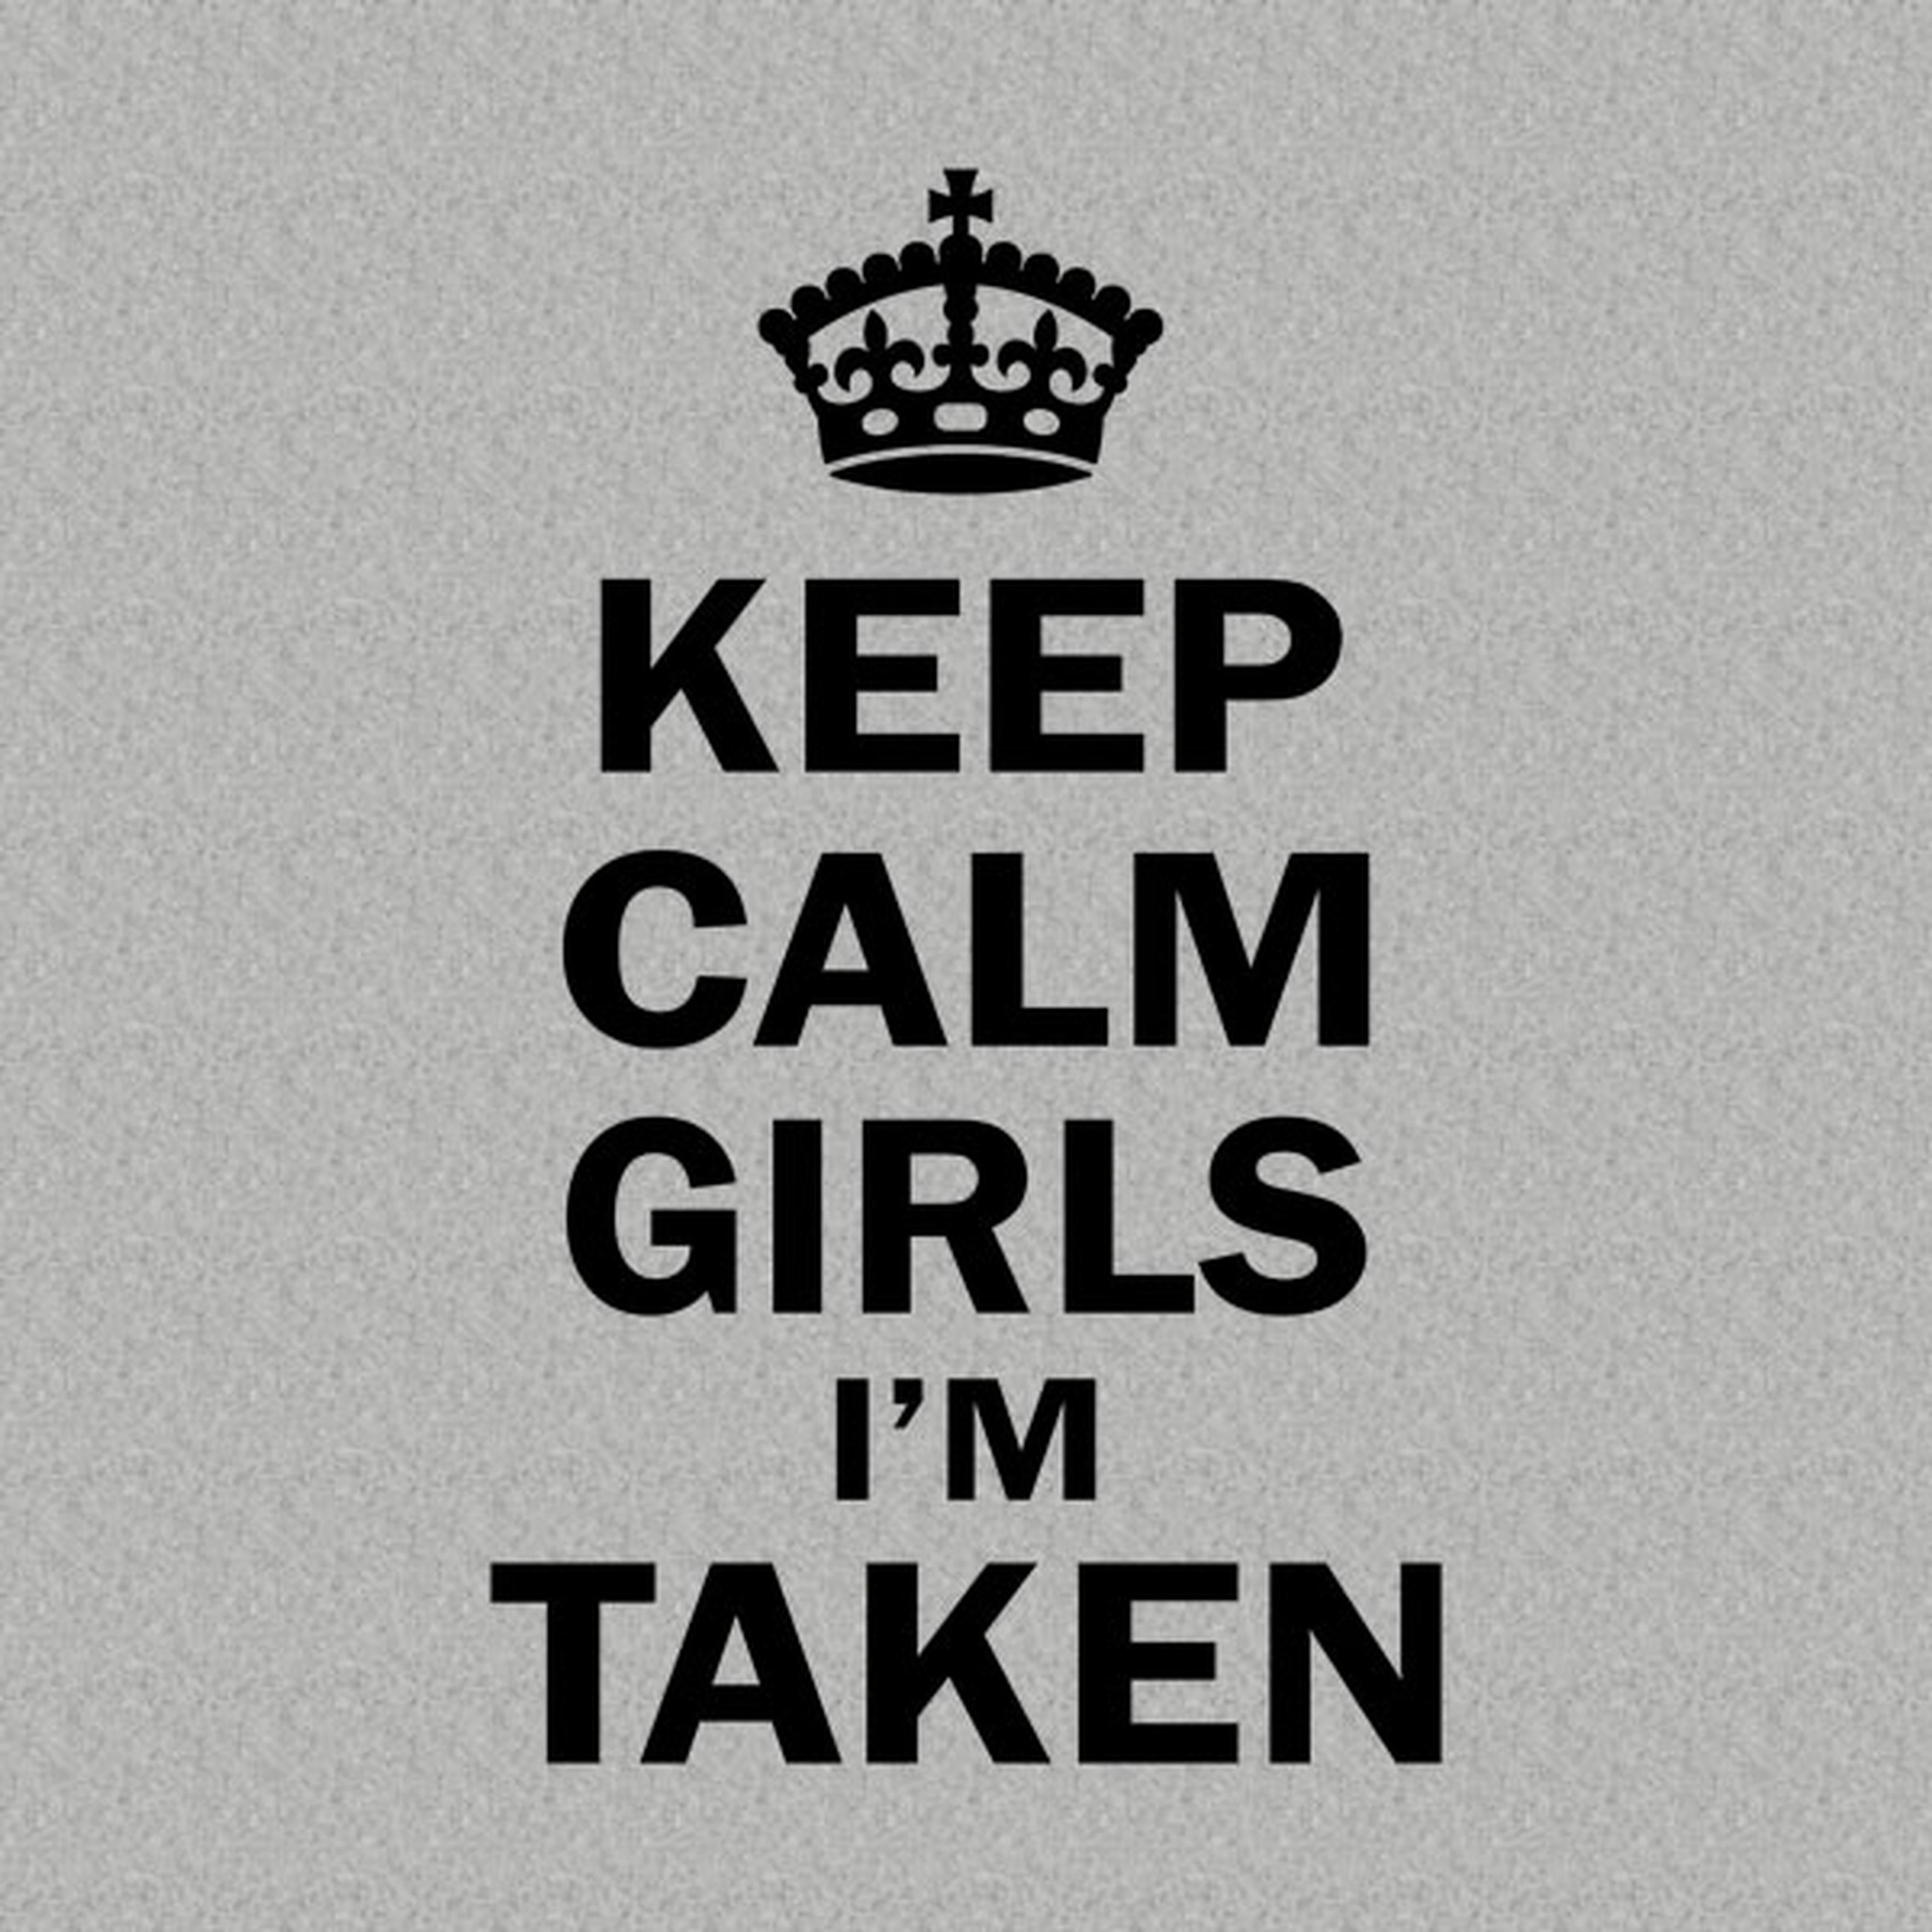 Keep calm girls - I am taken - T-shirt